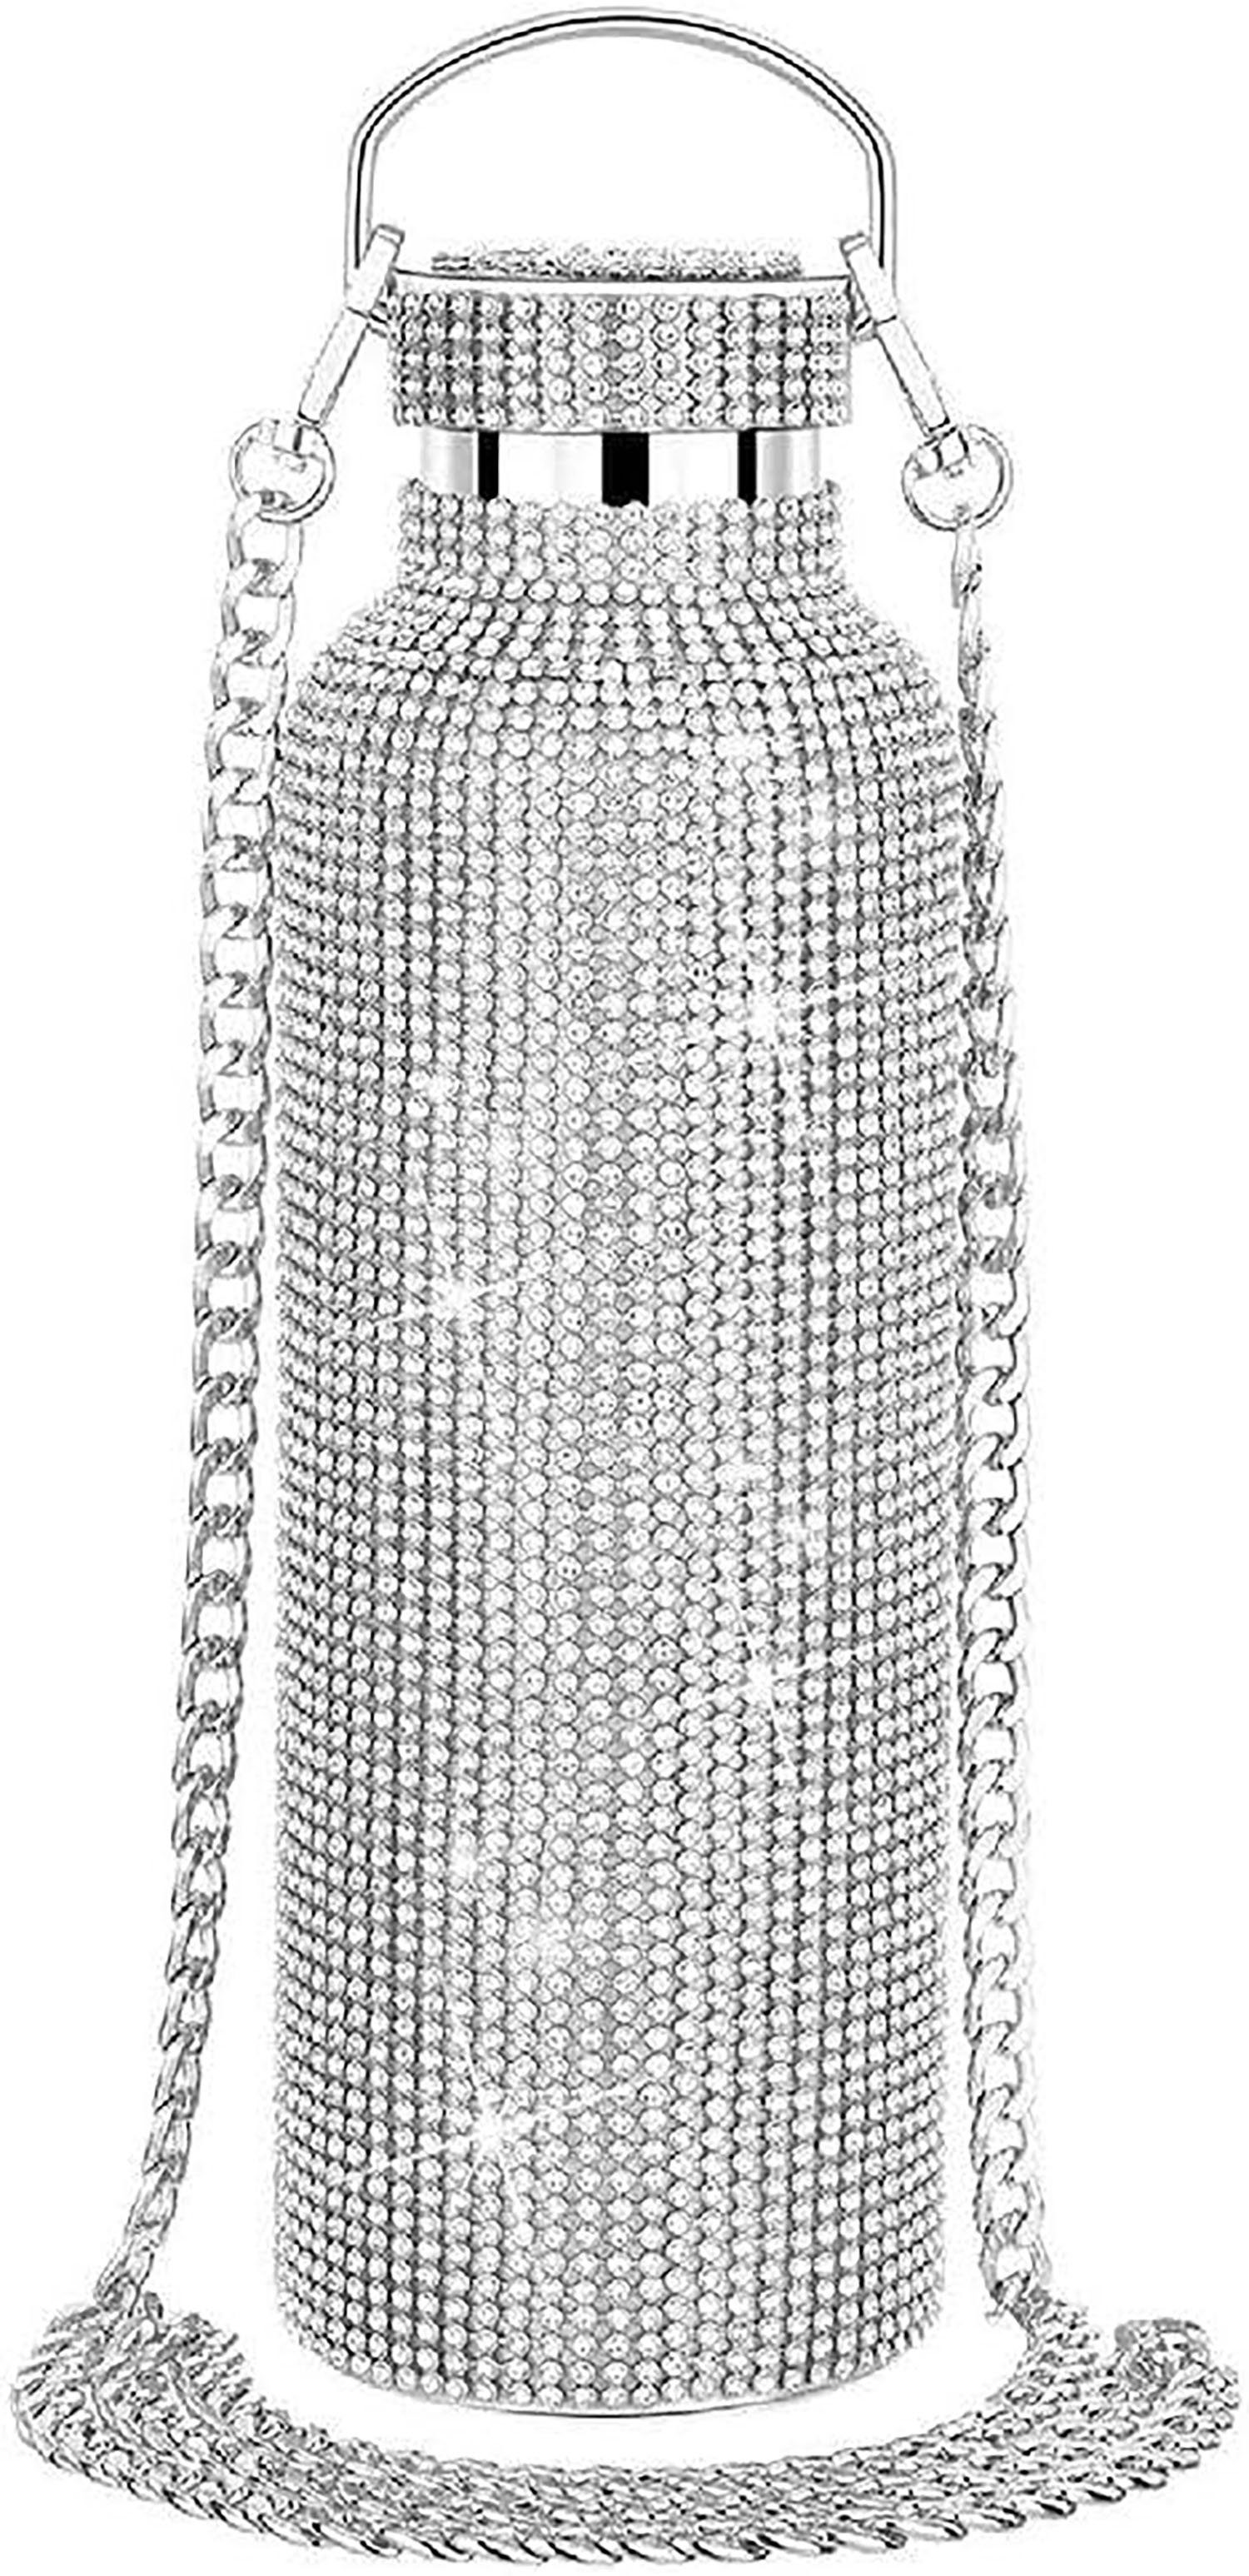 YYV Isolierflasche Thermosflasche mit Diamanten verziert, funkelnde Wasserflasche350ml, Trinkflaschen, Geschenke, tragbare Diamant-Wasserflaschen Silber